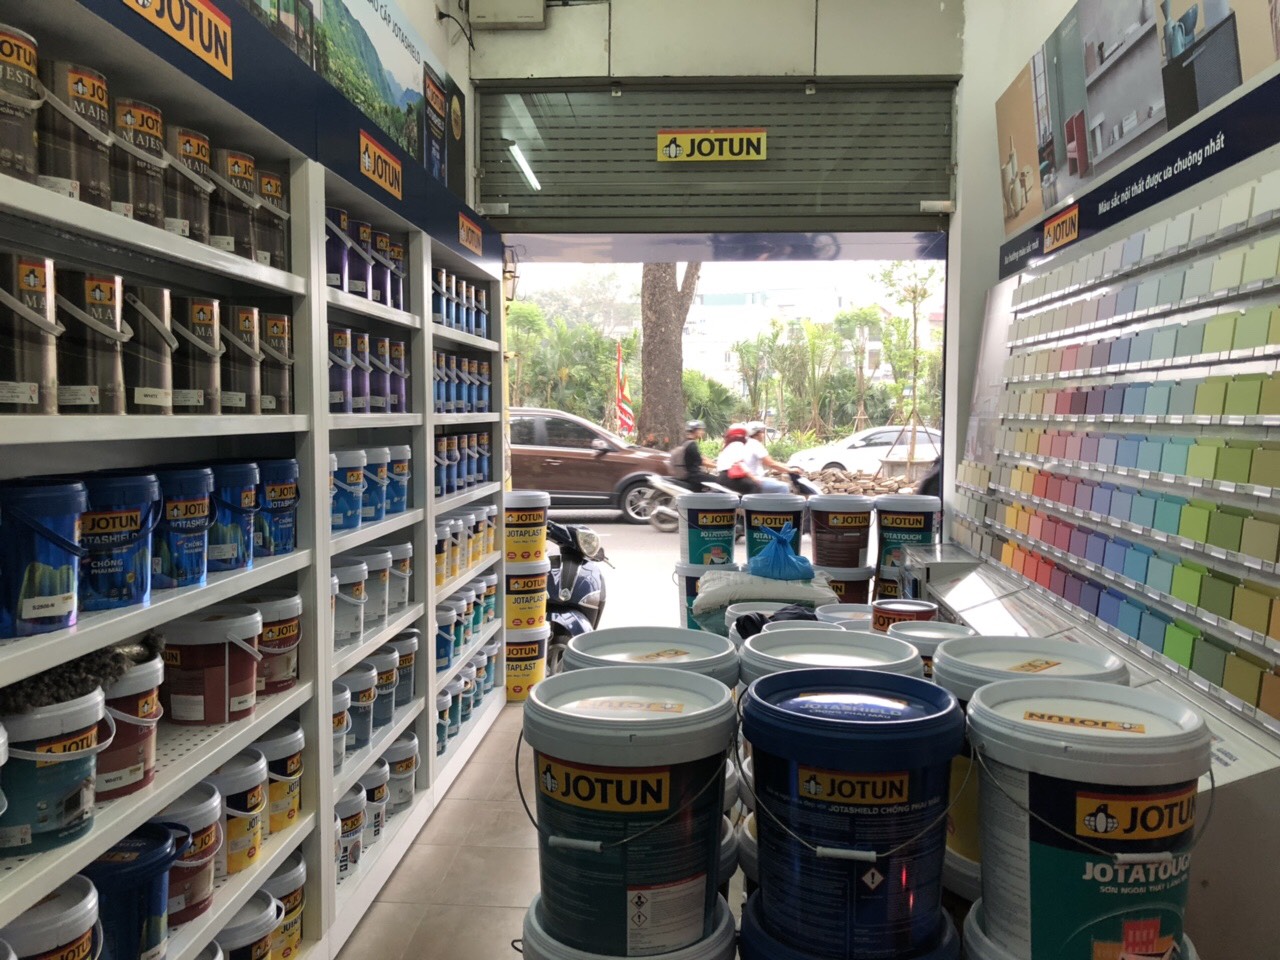 Bạn đang tìm kiếm một nơi cung cấp sơn Jotun uy tín tại Hà Nội? Chúng tôi là đại lý sơn Jotun chính hãng và chúng tôi có giá cả cực kỳ hấp dẫn trong đợt khuyến mãi này. Đến với chúng tôi để mua sắm và sử dụng những sản phẩm sơn Jotun tuyệt vời nhất.